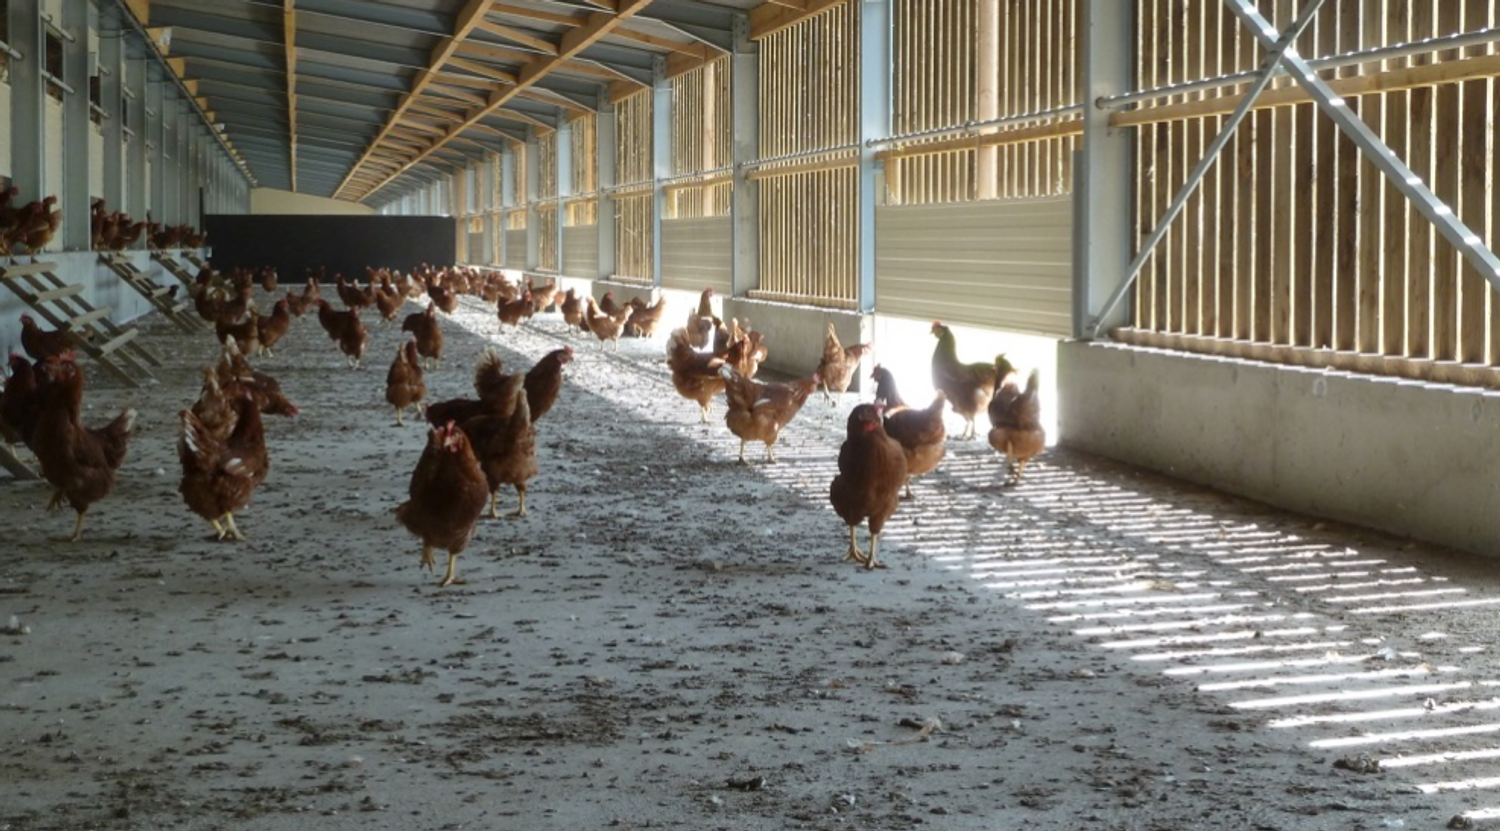 Chez Valérie, les poules resteront dans le Jardin d'hiver durant toute la période de confinement.